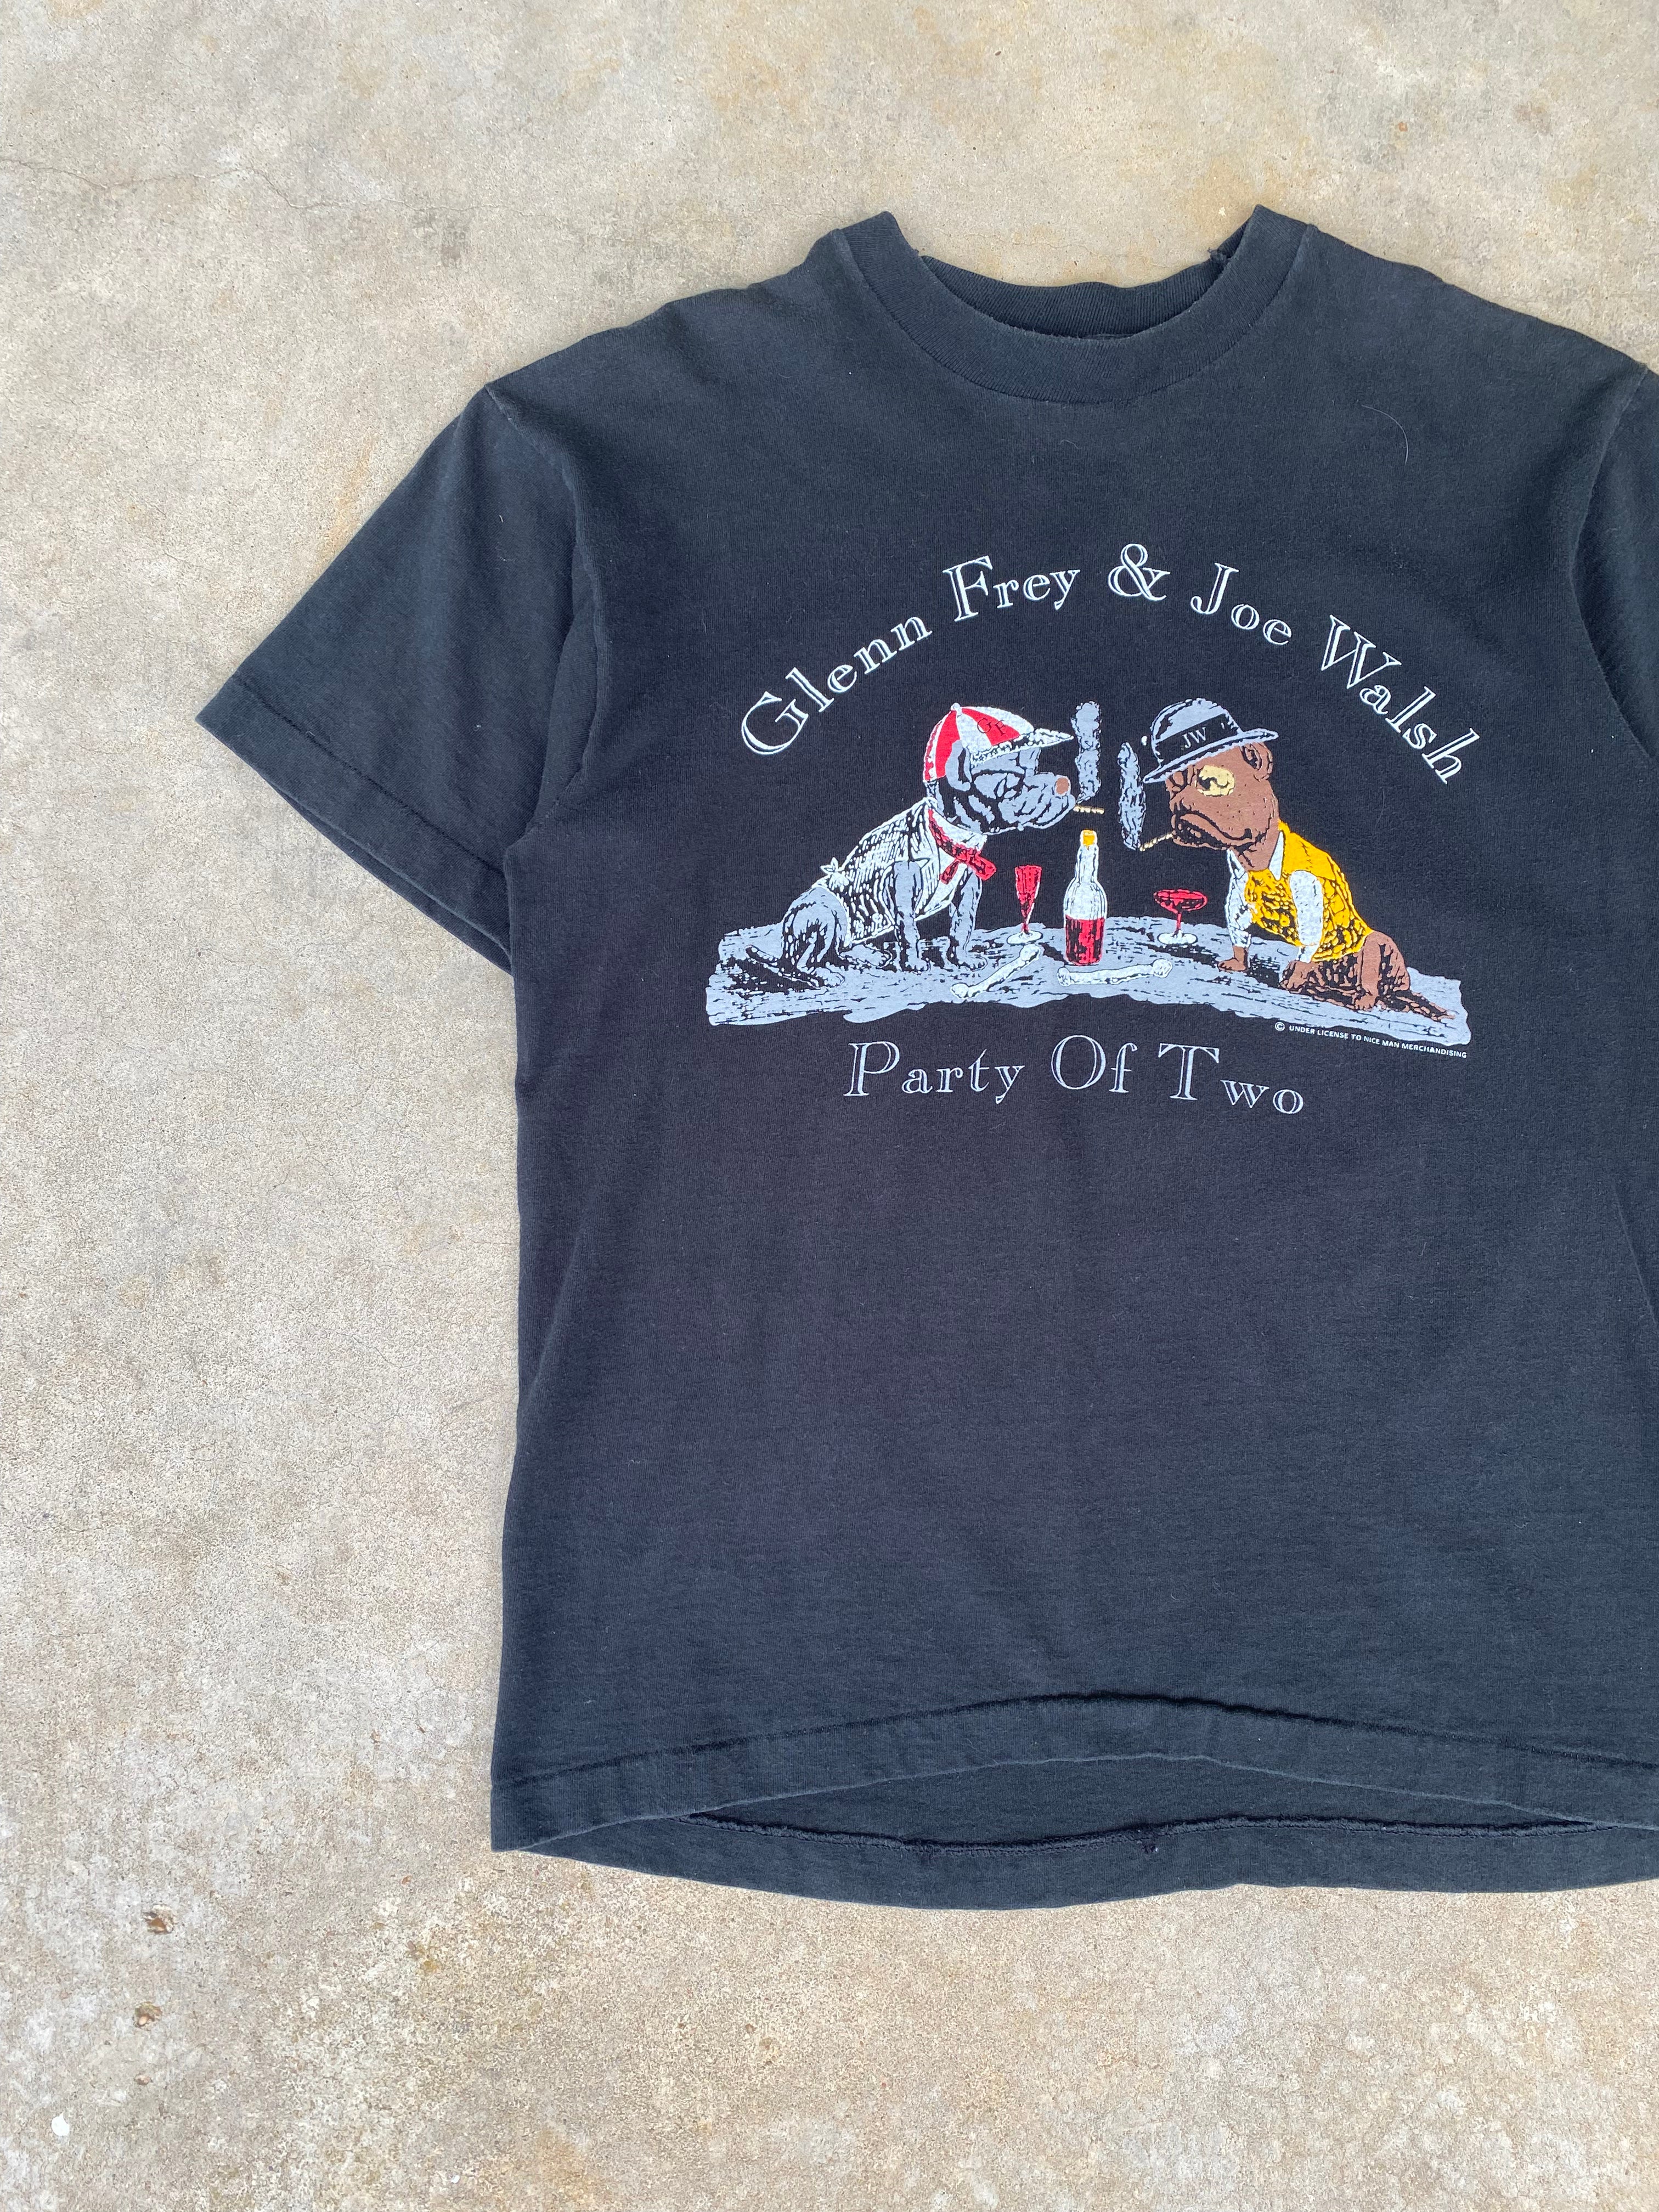 1993 Glenn Frey & Joe Walsh Party of Two Tour T-Shirt (M/L)